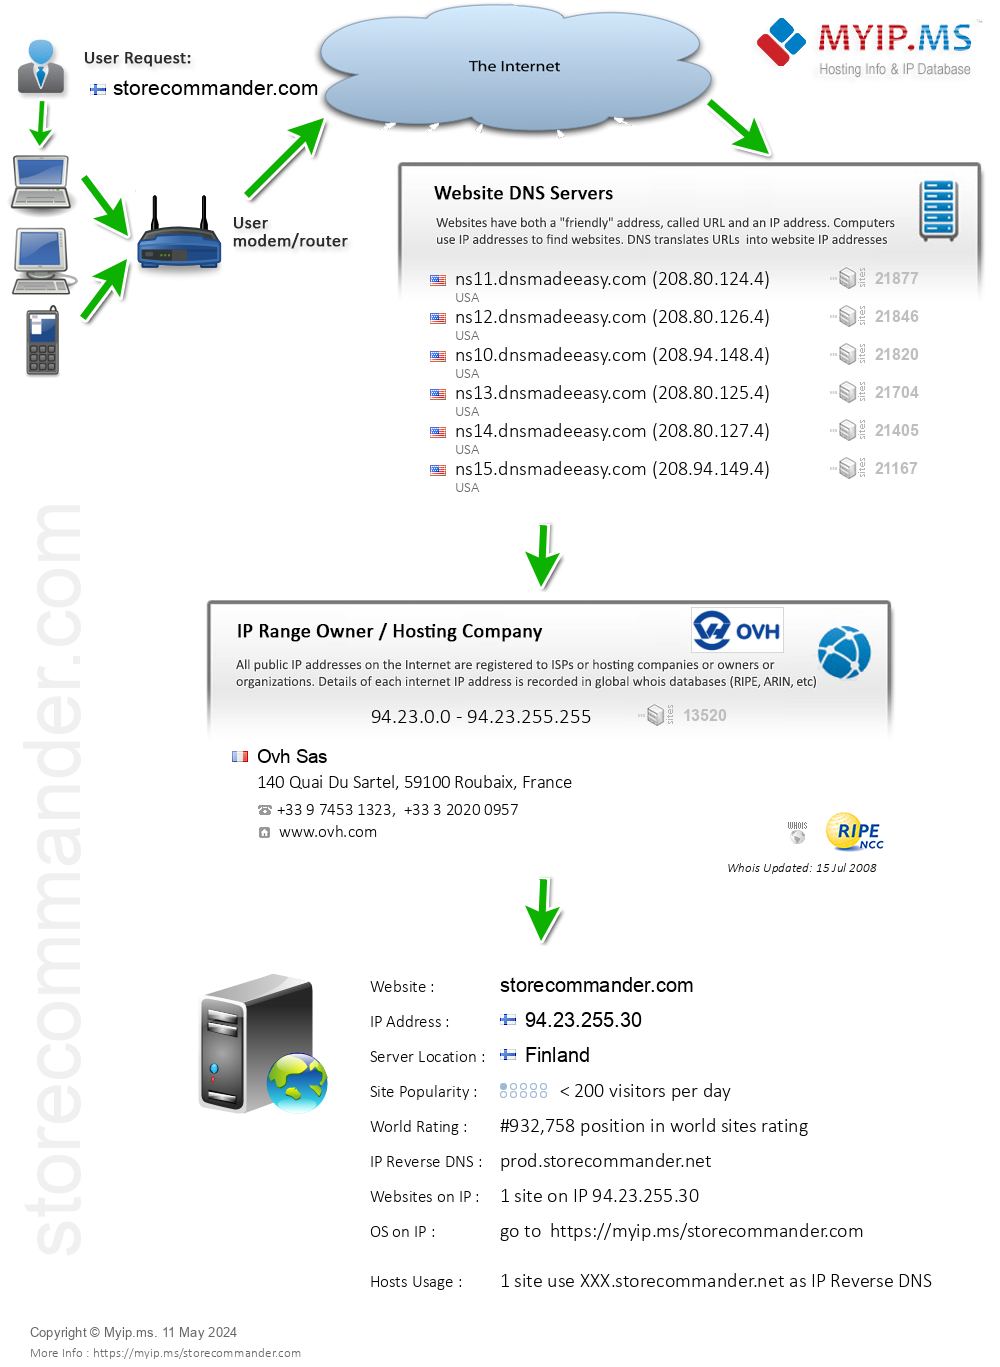 Storecommander.com - Website Hosting Visual IP Diagram